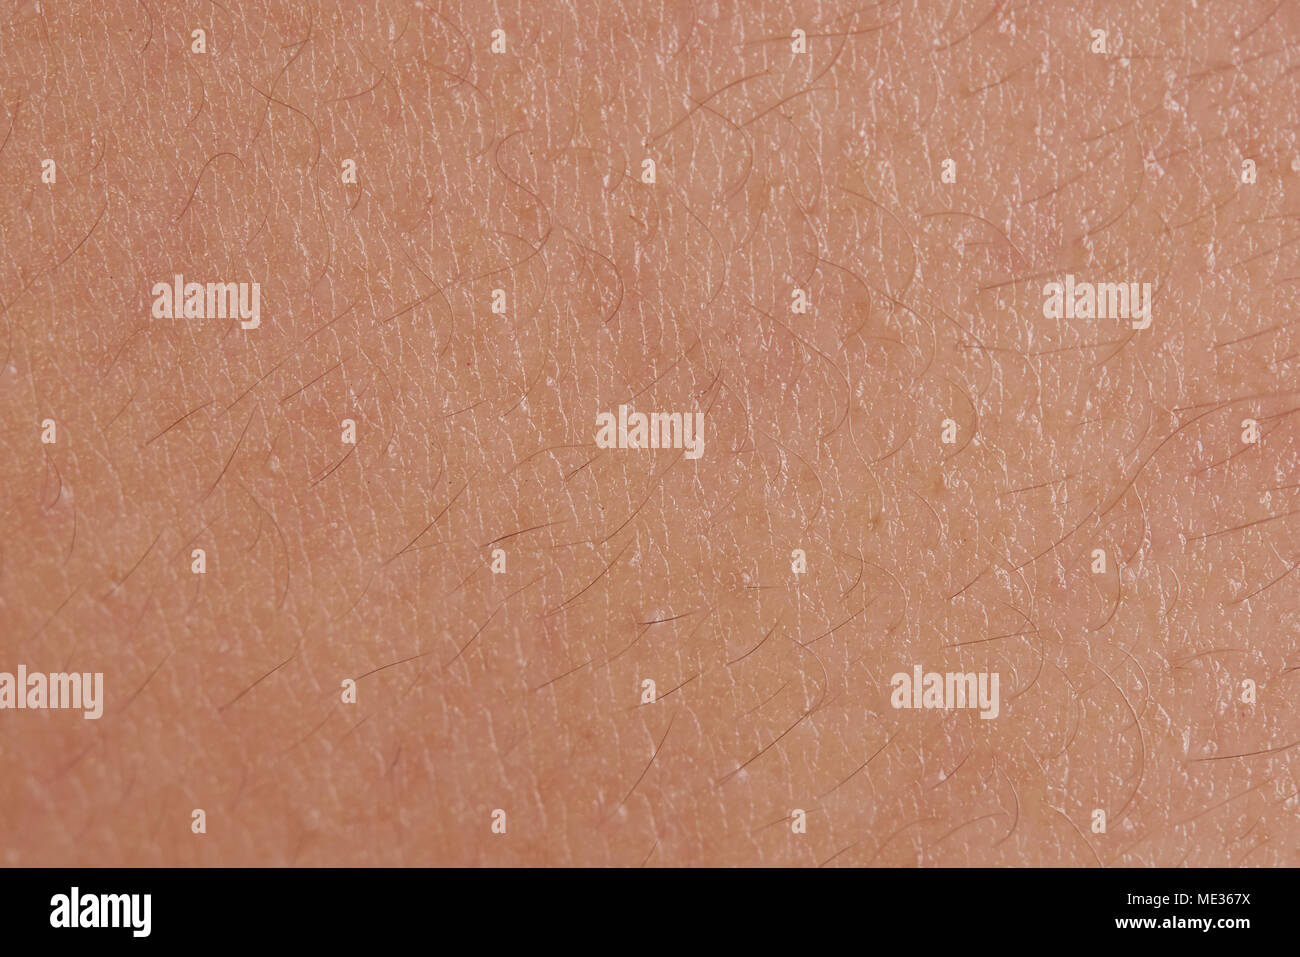 La texture de la peau humaine avec de petites macro close up de cheveux Banque D'Images